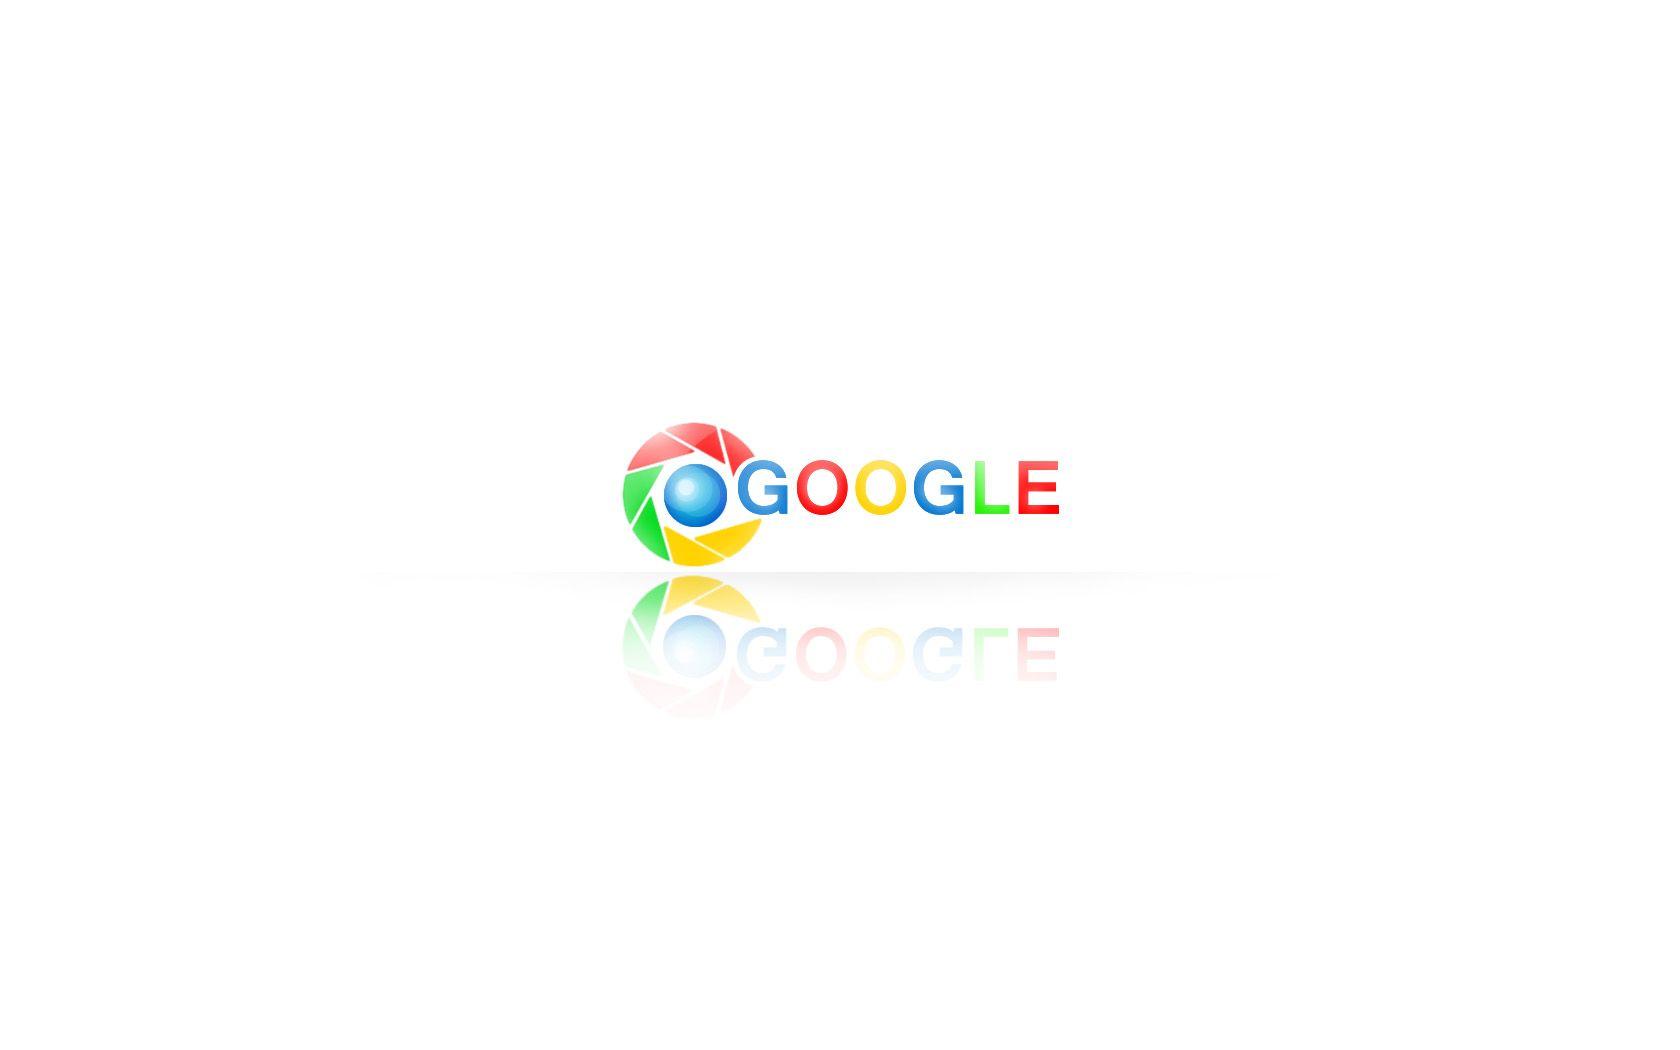 Google Chrome Themes Wallpaper 55071 Best HD Wallpaper. Wallpaiper